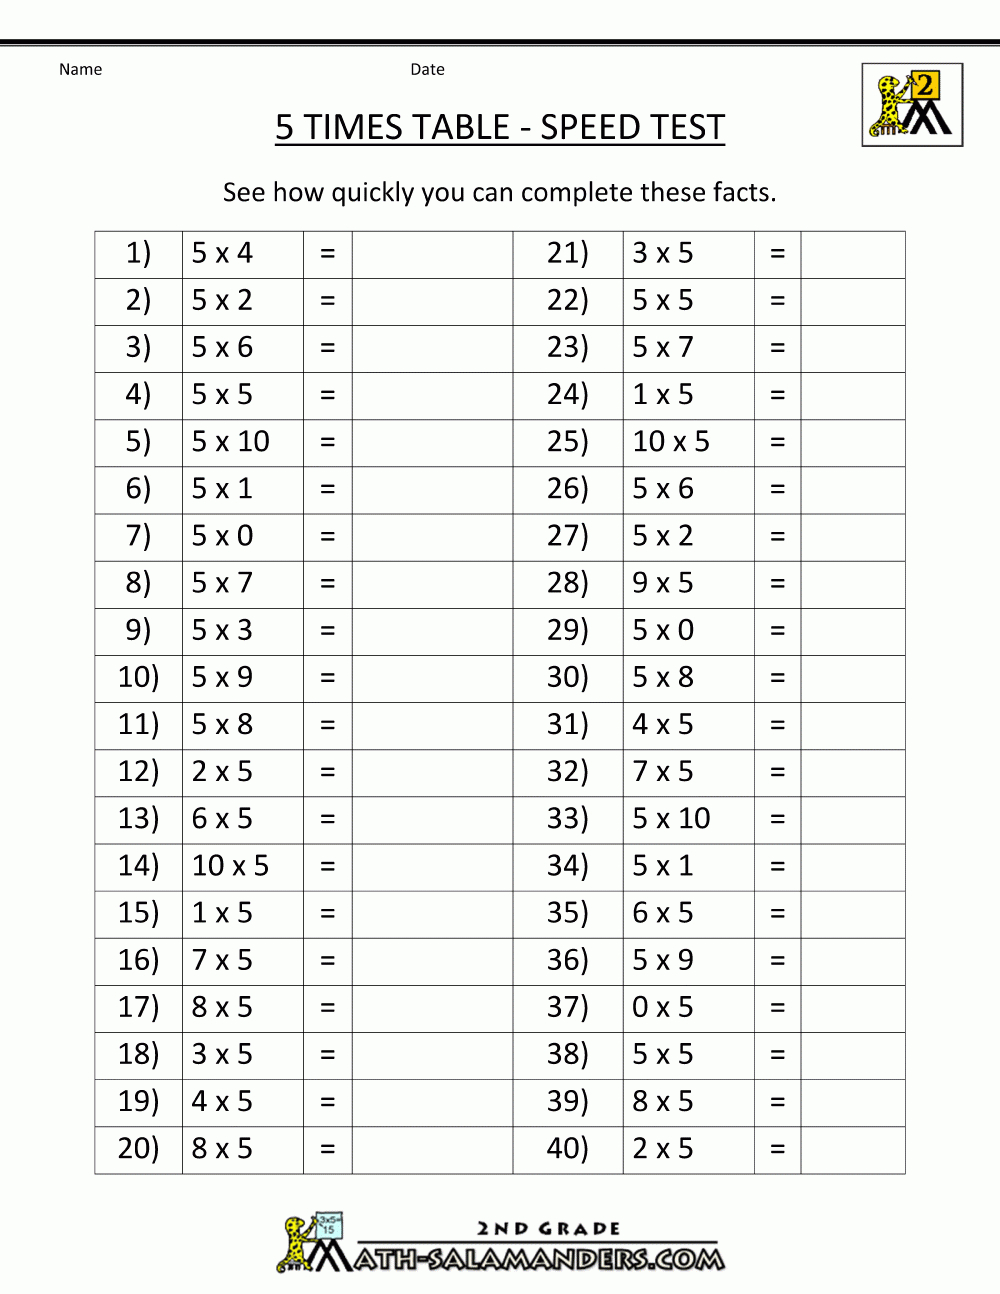 5 Times Table Worksheet Printable | Printable Worksheets